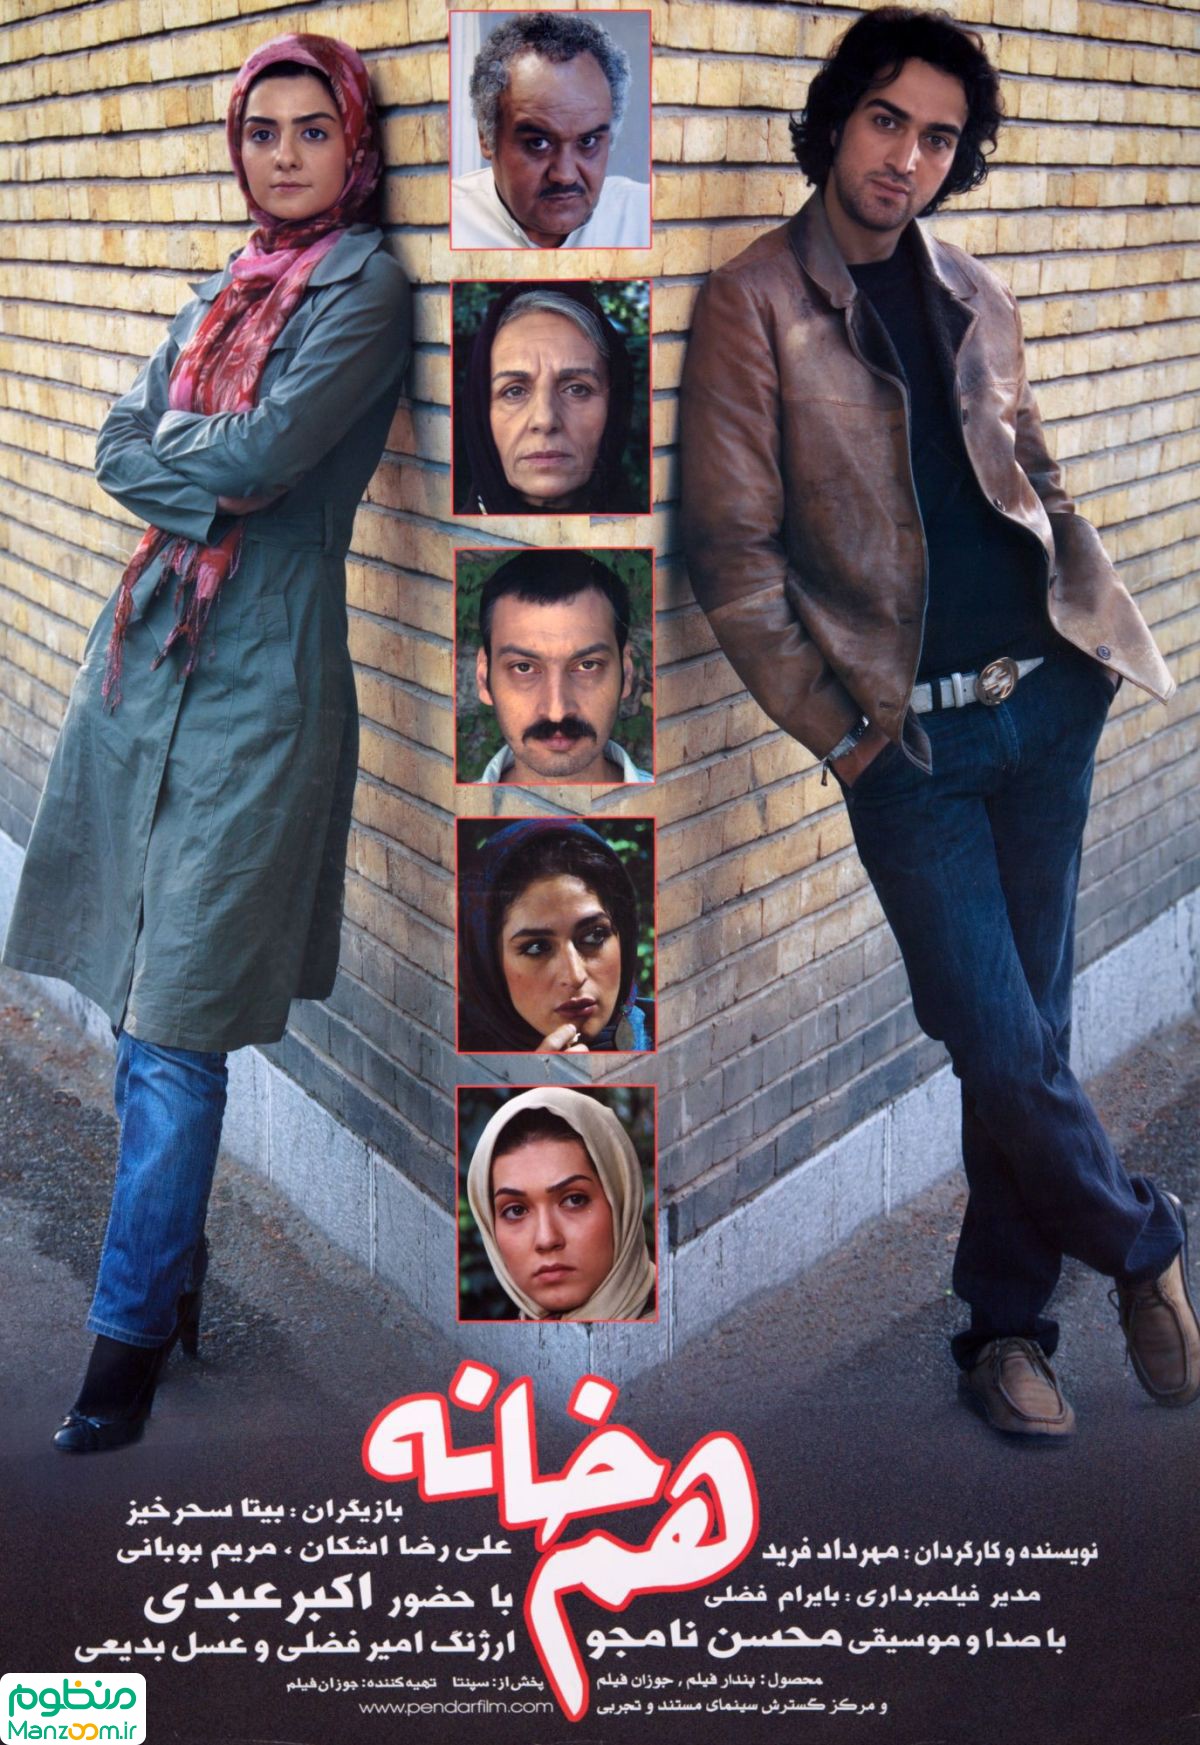  فیلم سینمایی همخانه به کارگردانی مهرداد فرید